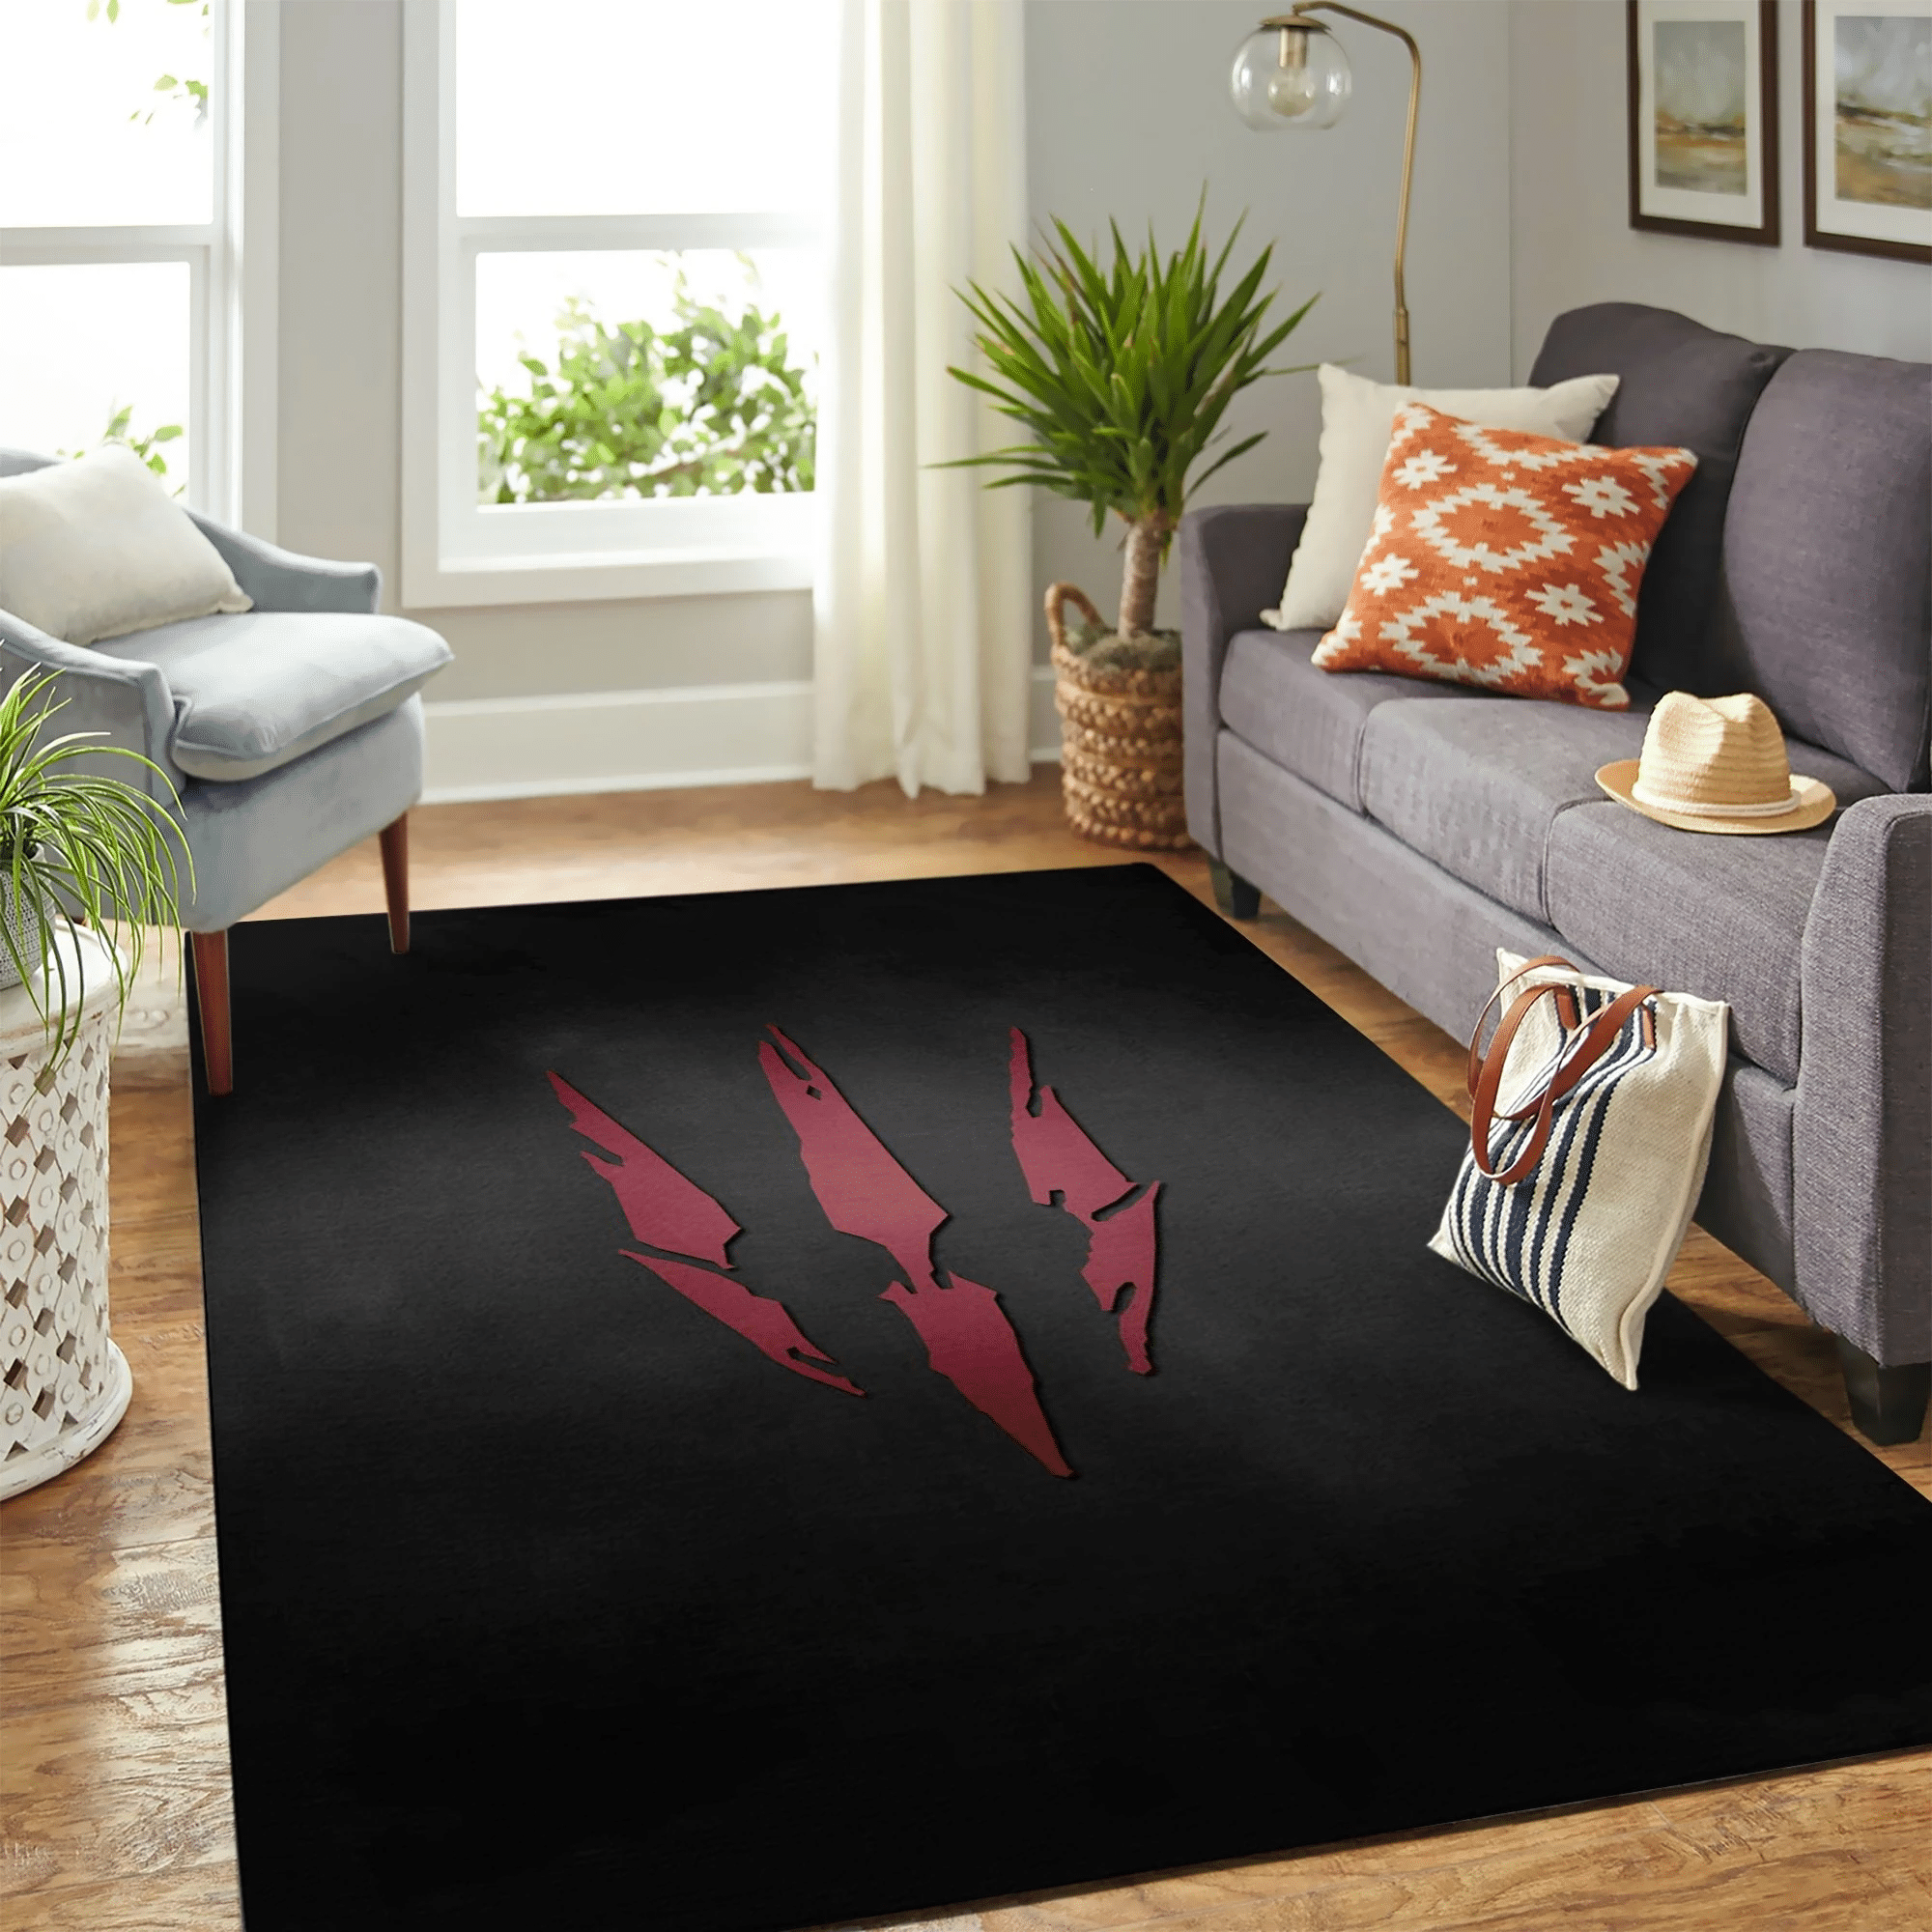 The Witcher Claw Carpet Floor Area Rug Chrismas Gift - Indoor Outdoor Rugs